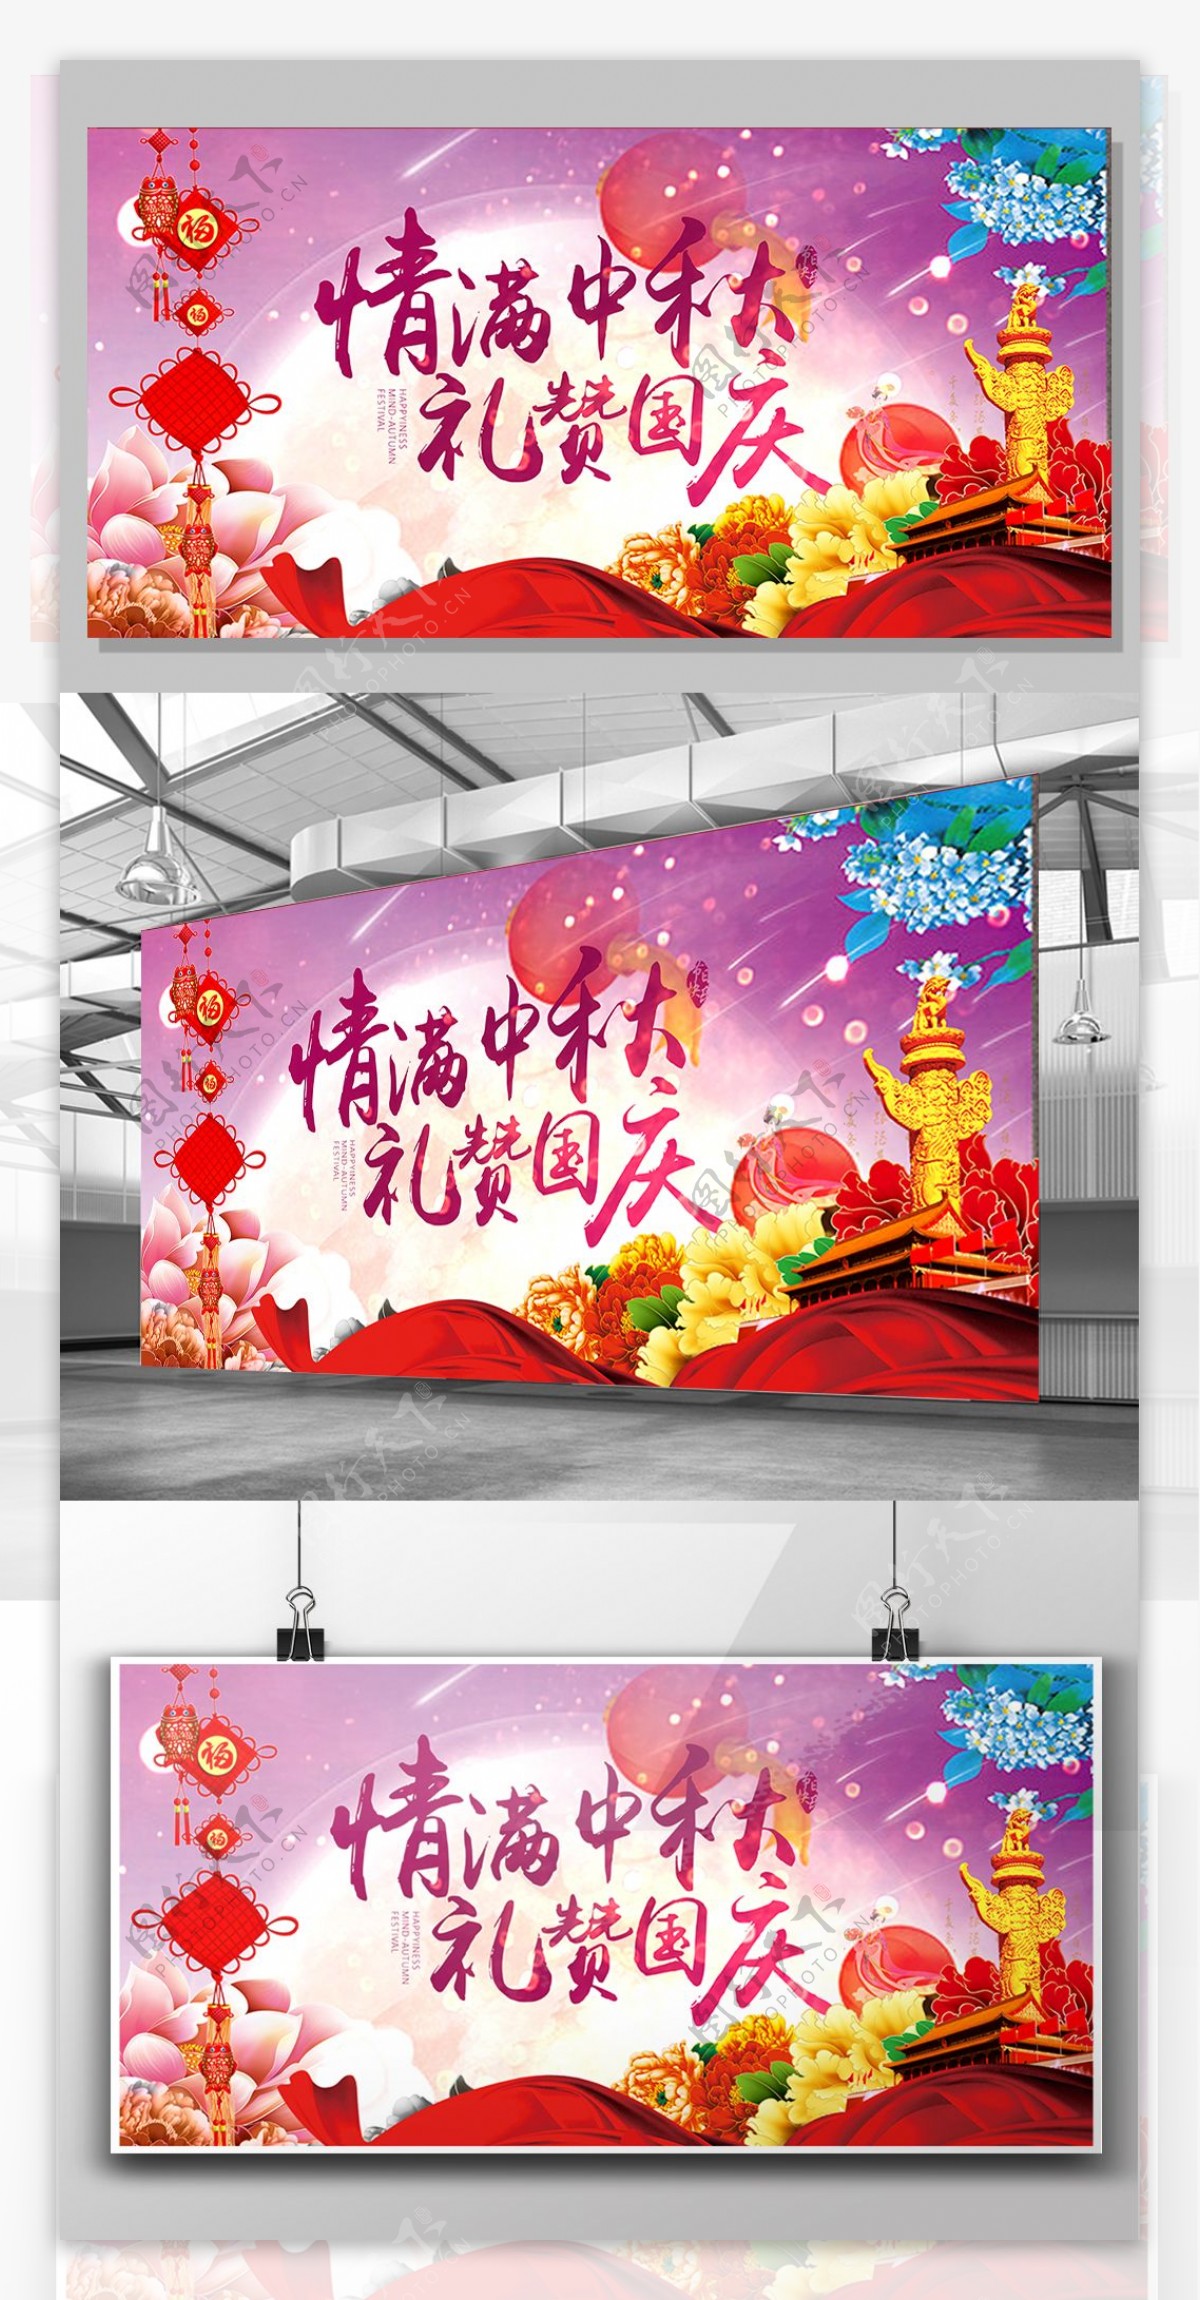 十一国庆中秋双节同庆促销海报展板